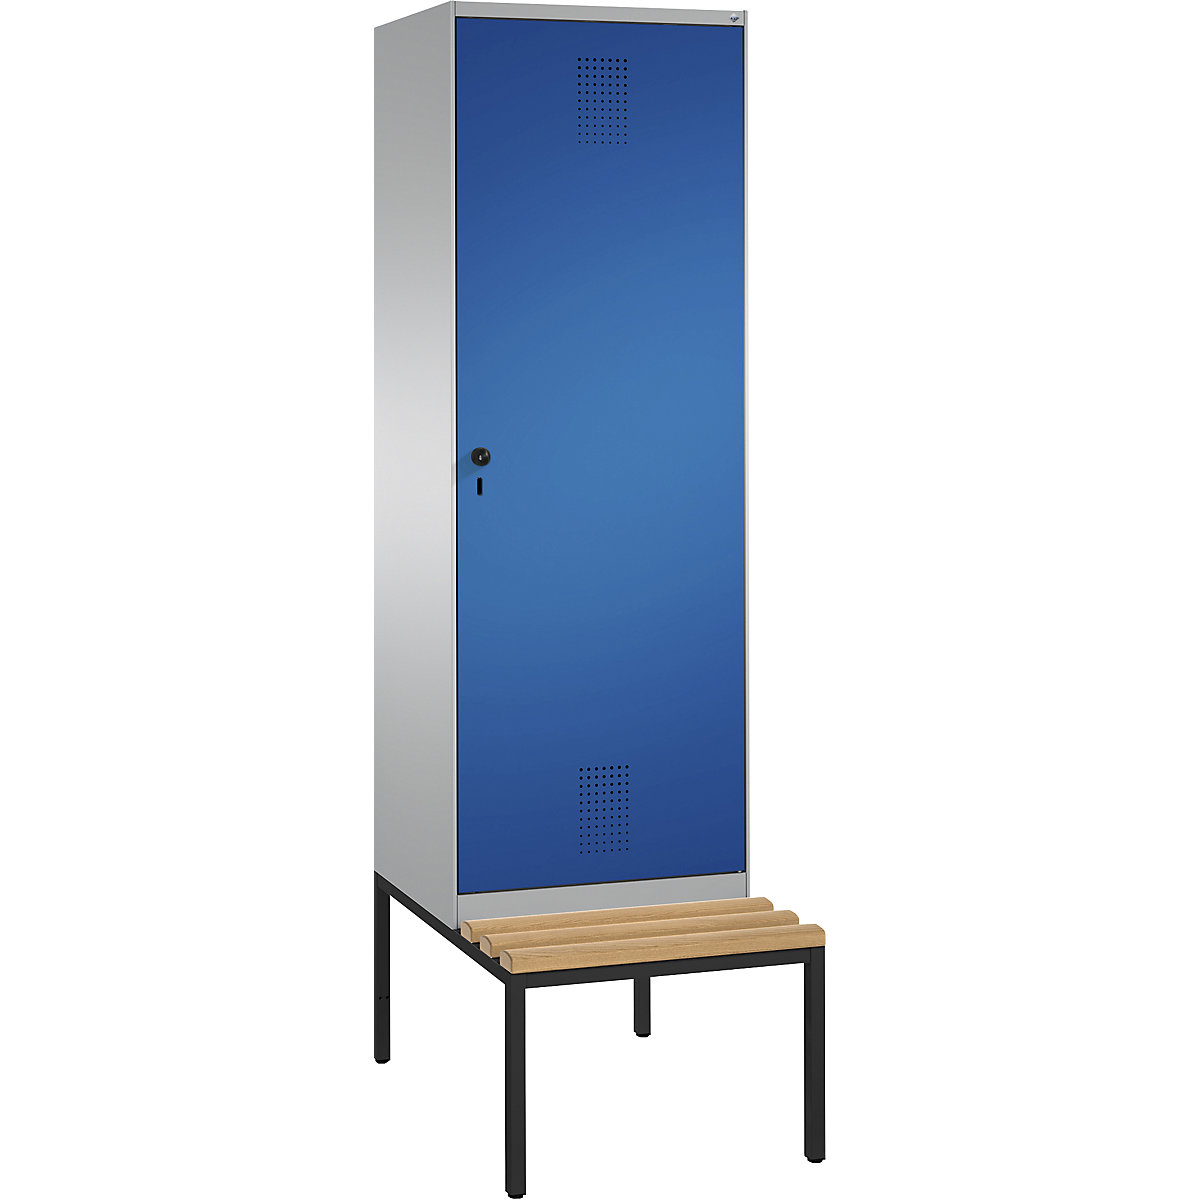 Šatní skříň s lavicí EVOLO s dveřmi přes 2 oddíly – C+P, 2 oddíly, 1 dveře, šířka oddílu 300 mm, bílý hliník / enciánová modrá-13